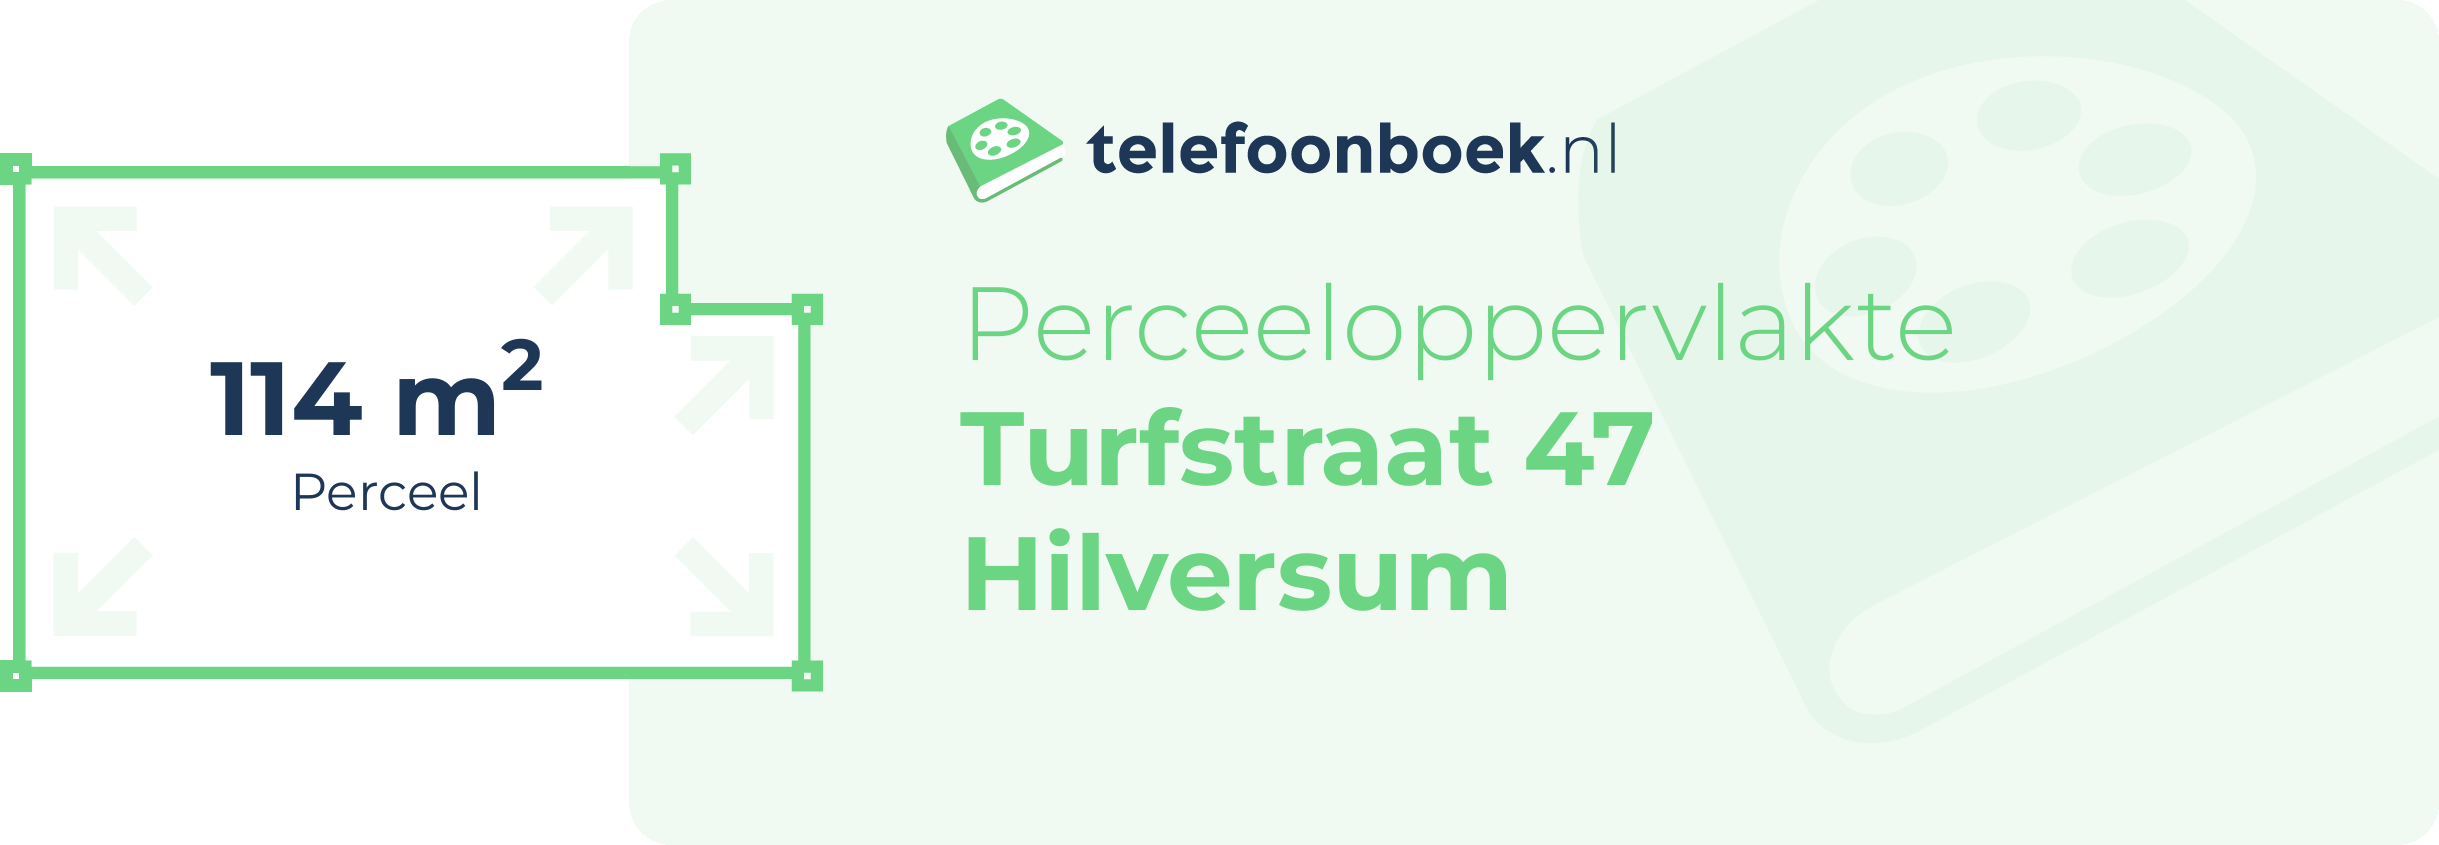 Perceeloppervlakte Turfstraat 47 Hilversum